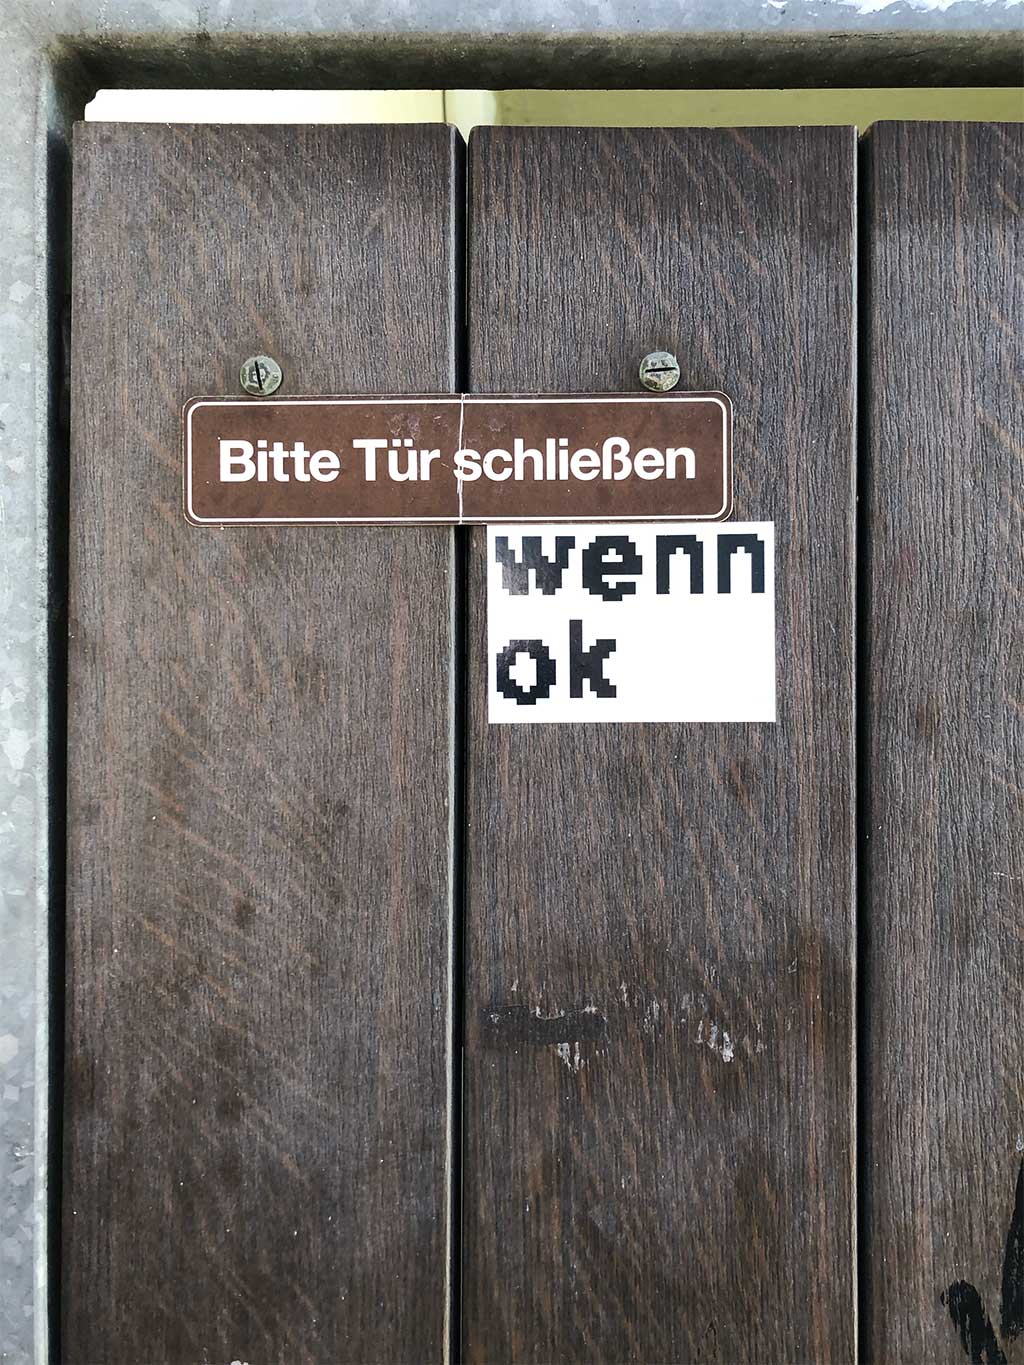 Urban Art Offenbach - Bitte Tür schließen wenn OK